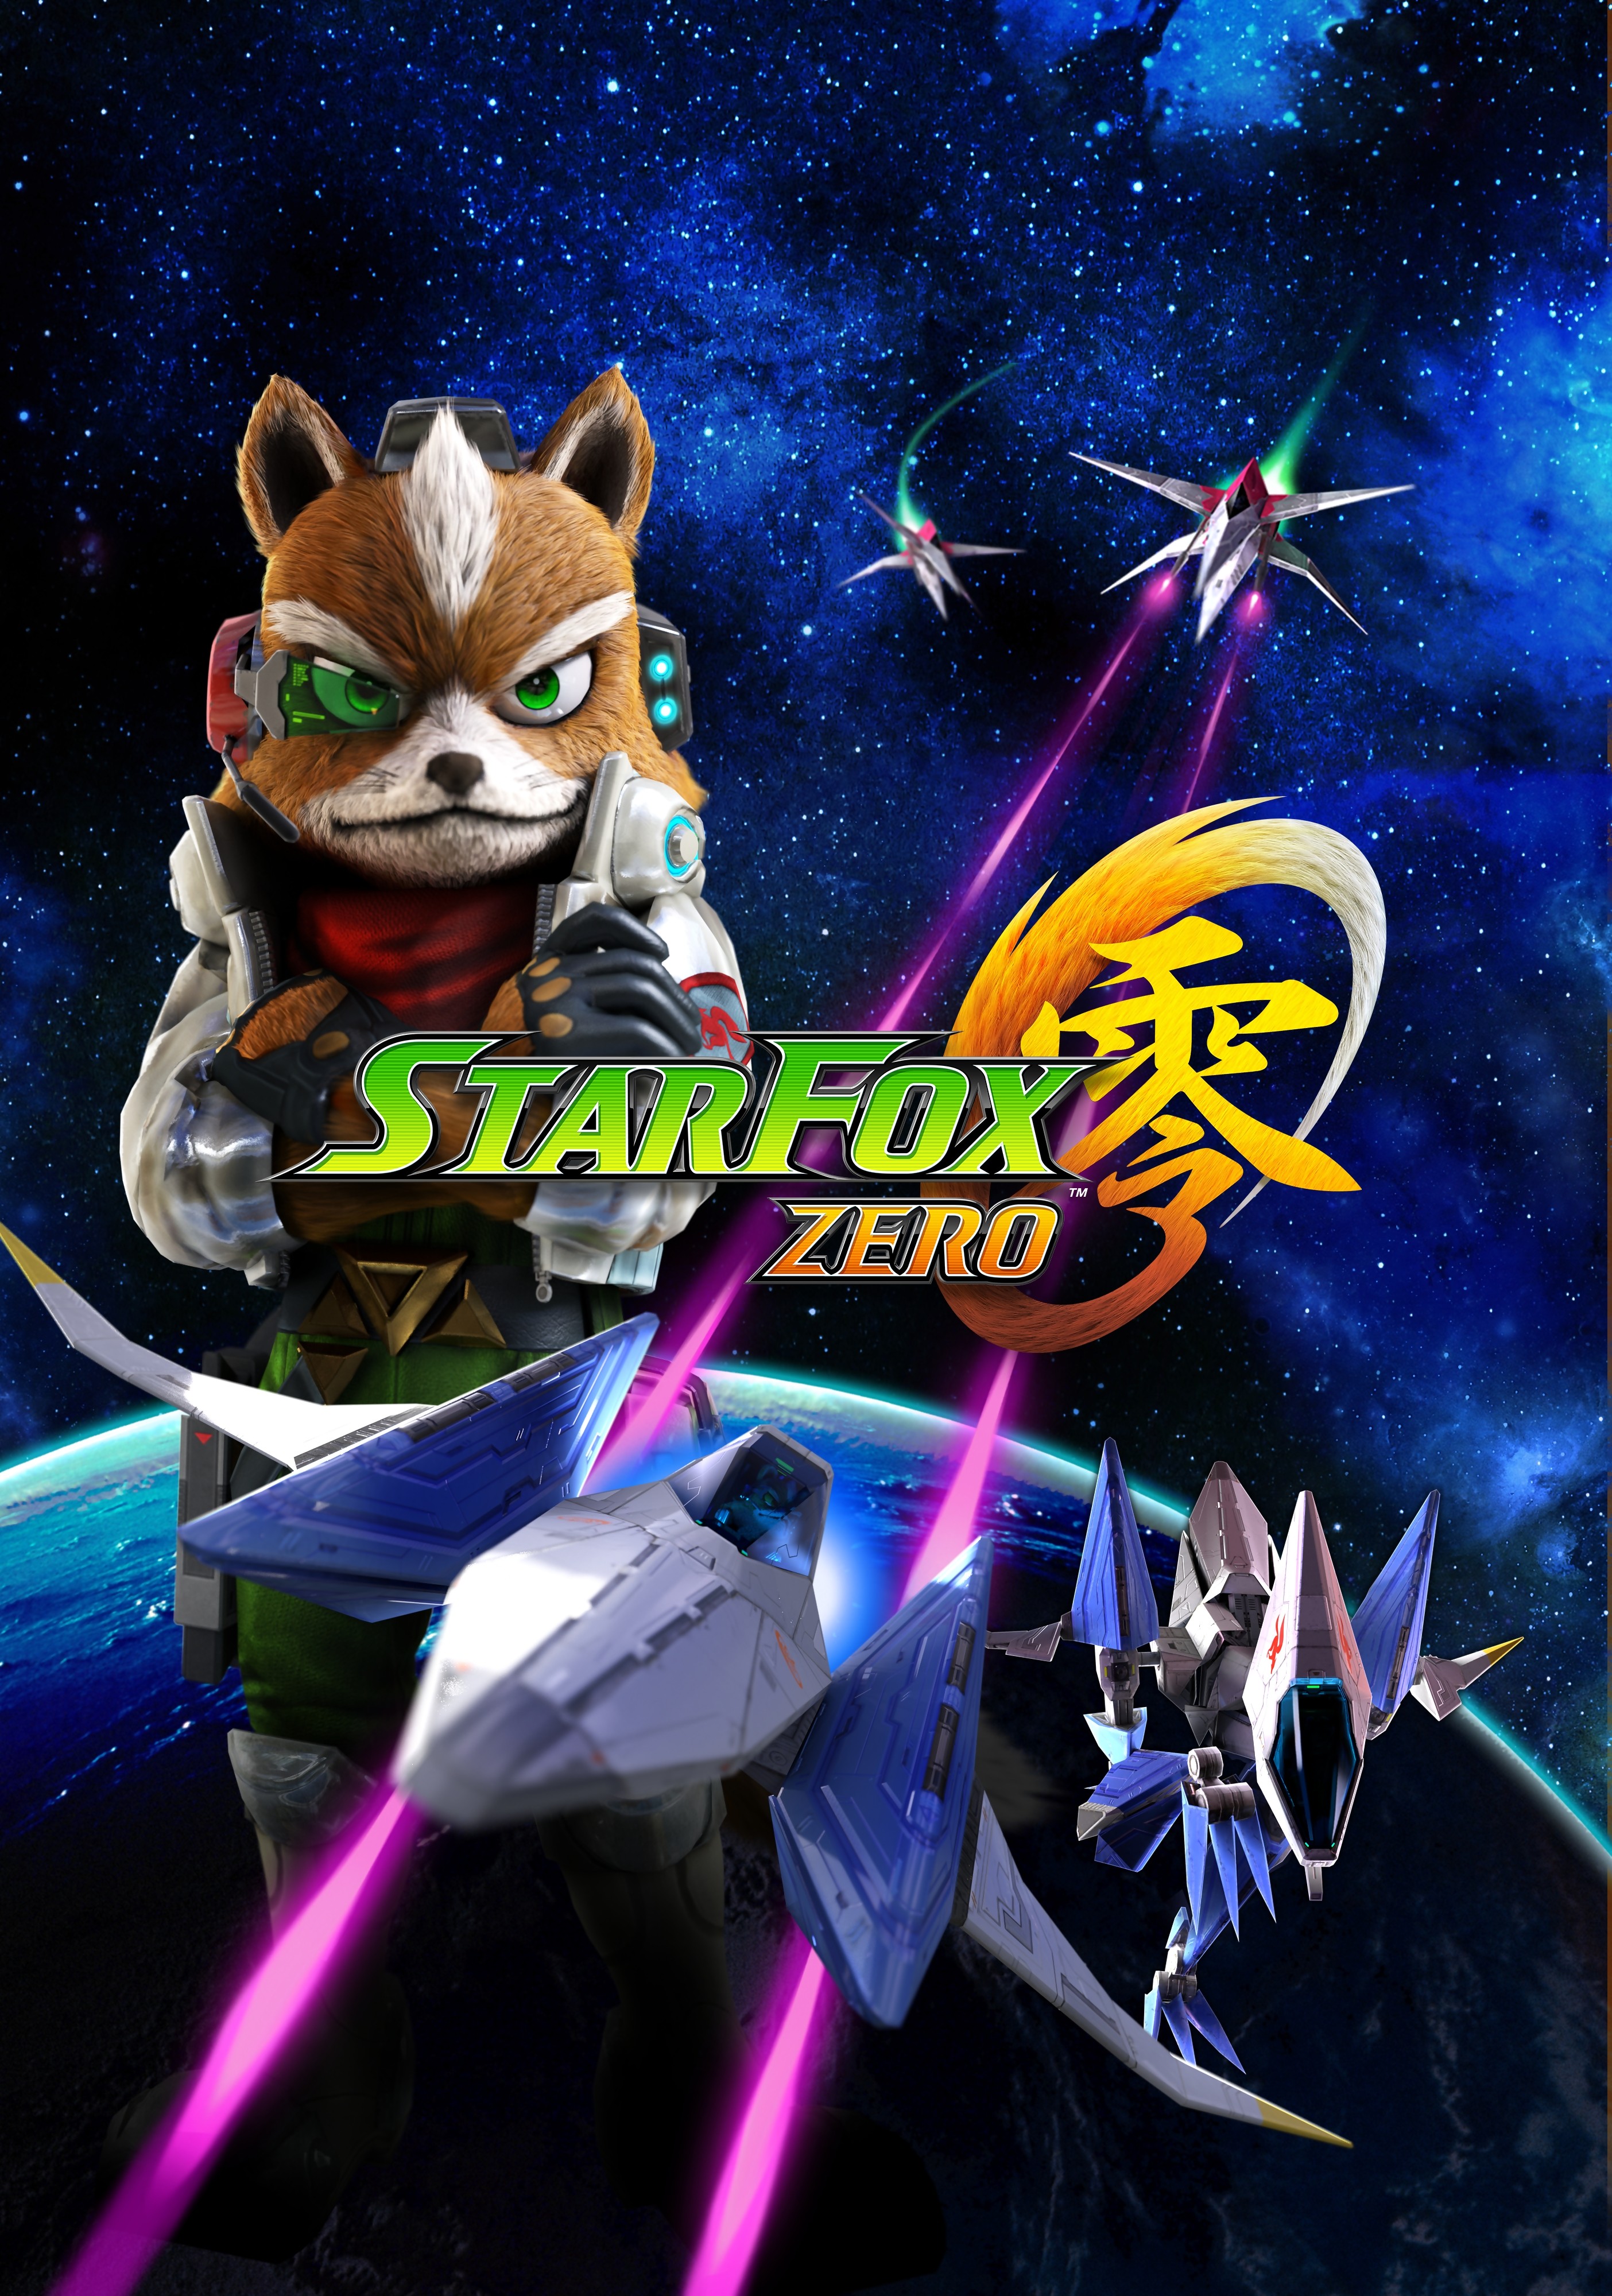 Zero fox. Star Fox Zero Wii u. Star Fox Wii u. Игра Star Fox. Star Fox Zero: the Battle begins.